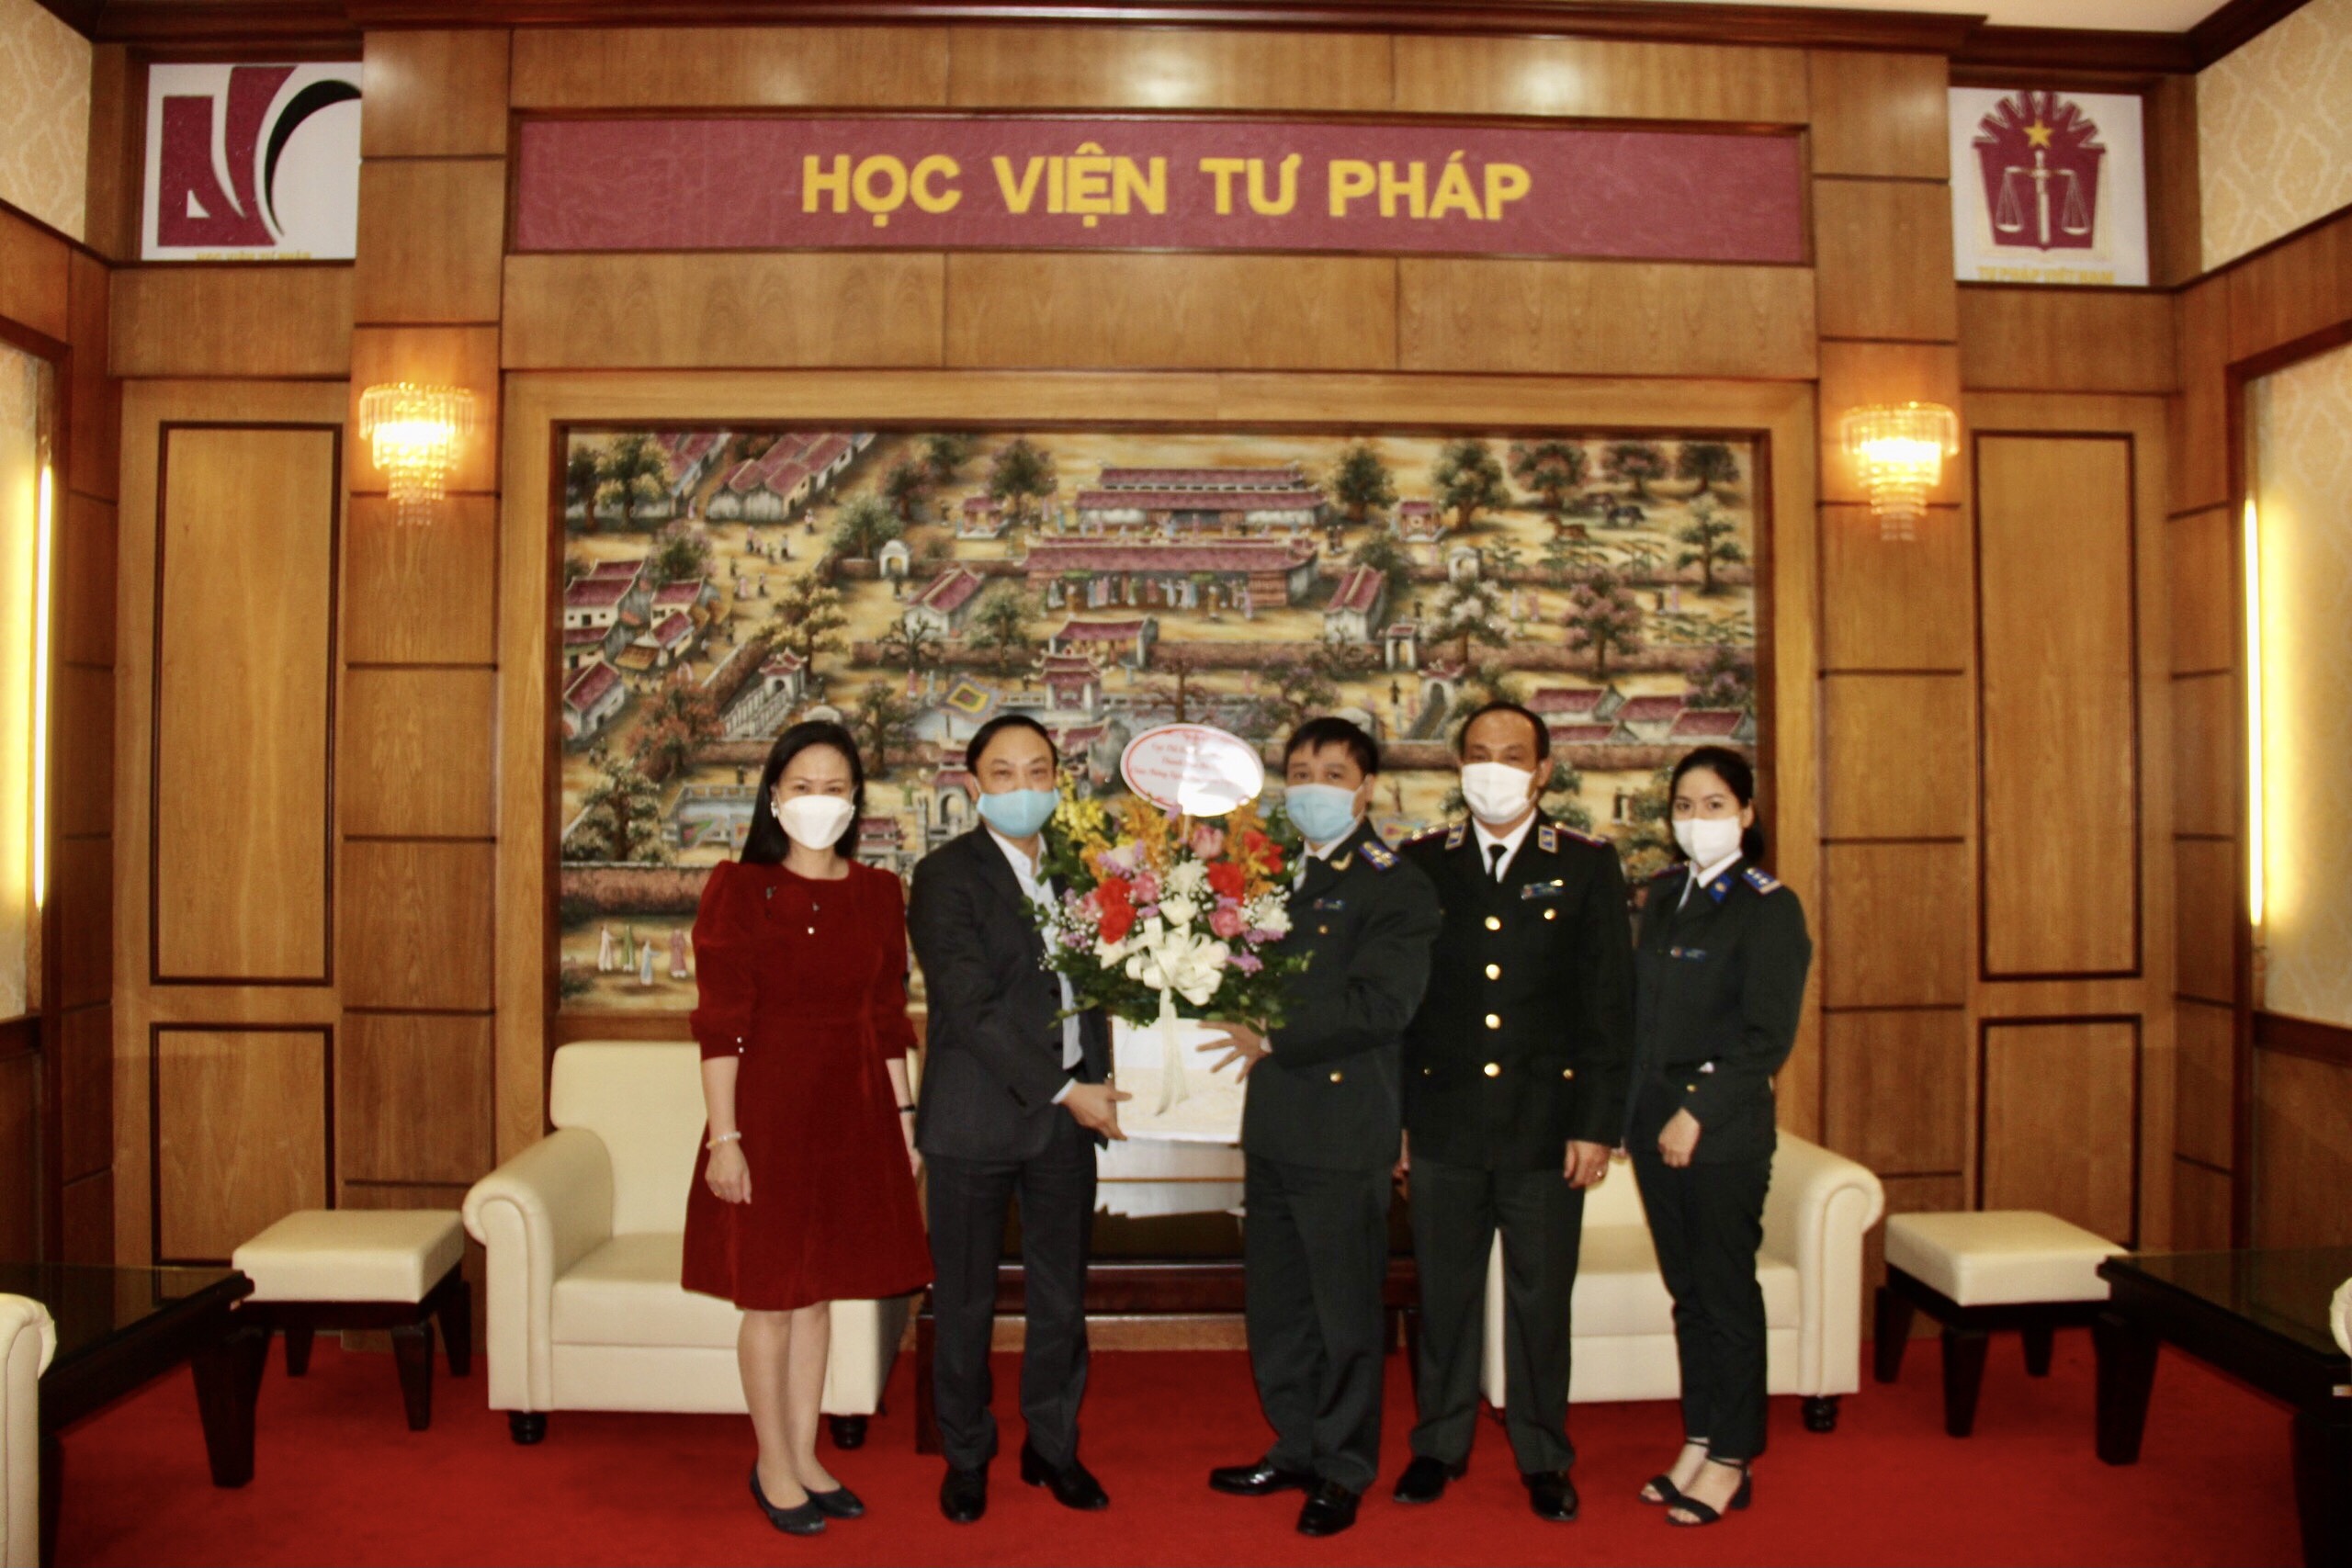 Cục Thi hành án dân sự thành phố Hà Nội tặng hoa chúc mừng Học viện Tư pháp nhân ngày Nhà giáo Việt Nam năm 2021